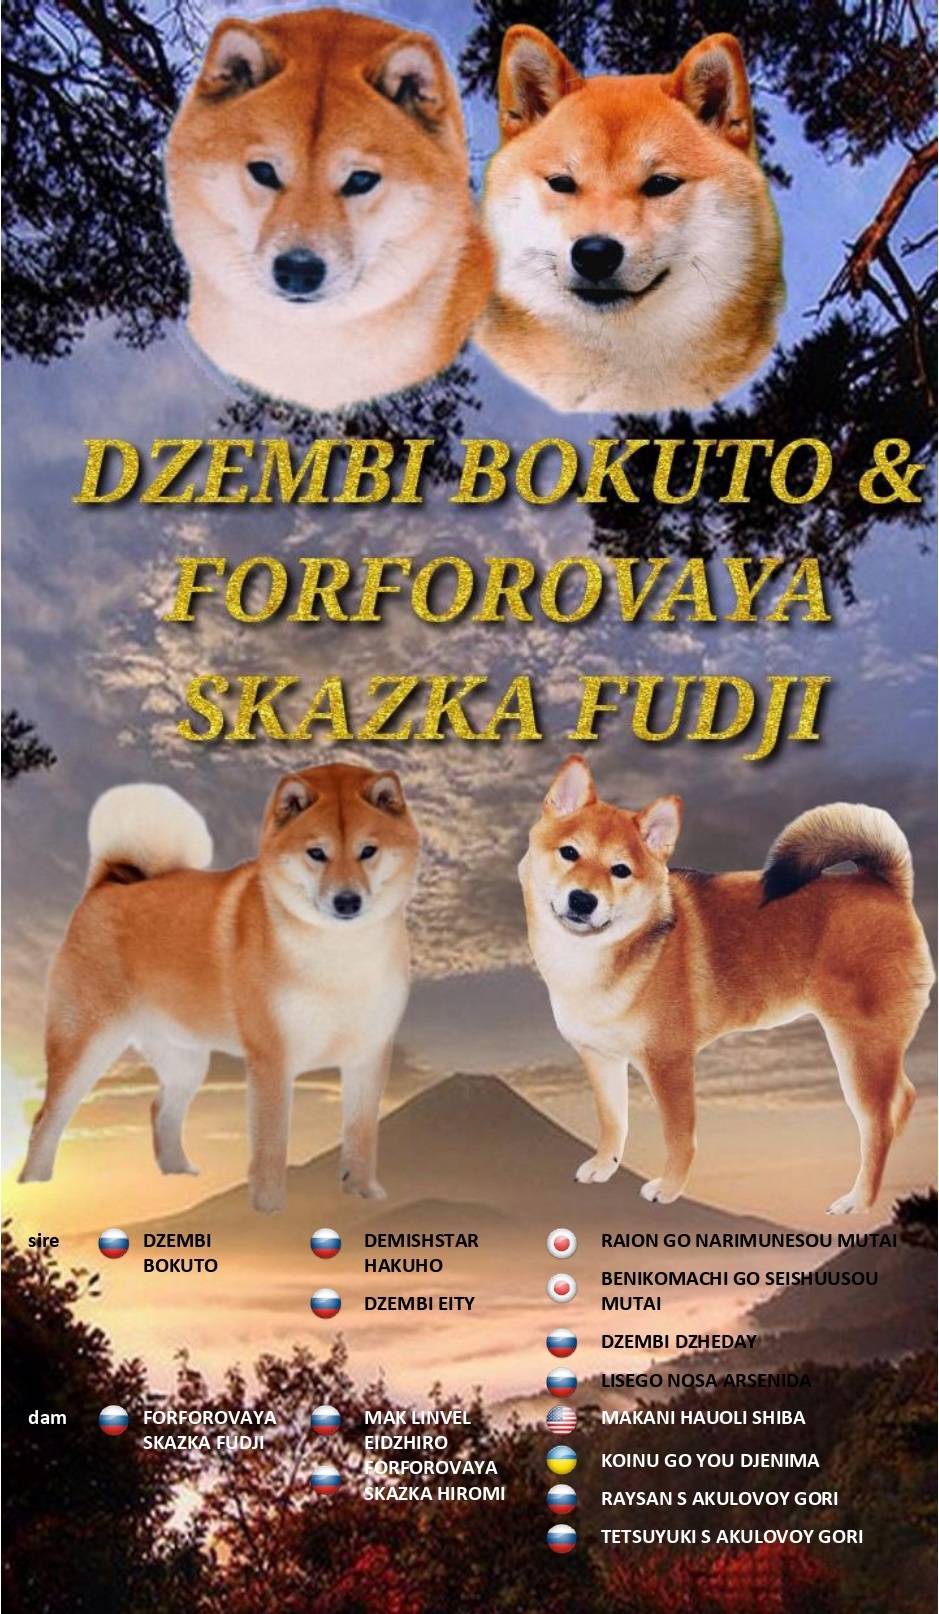 Предлагаются очаровательные щенки Сиба ину от пары DZEMBI BOKUTO & FORFOROVAYA SKAZKA FUDJI. Aaau_10